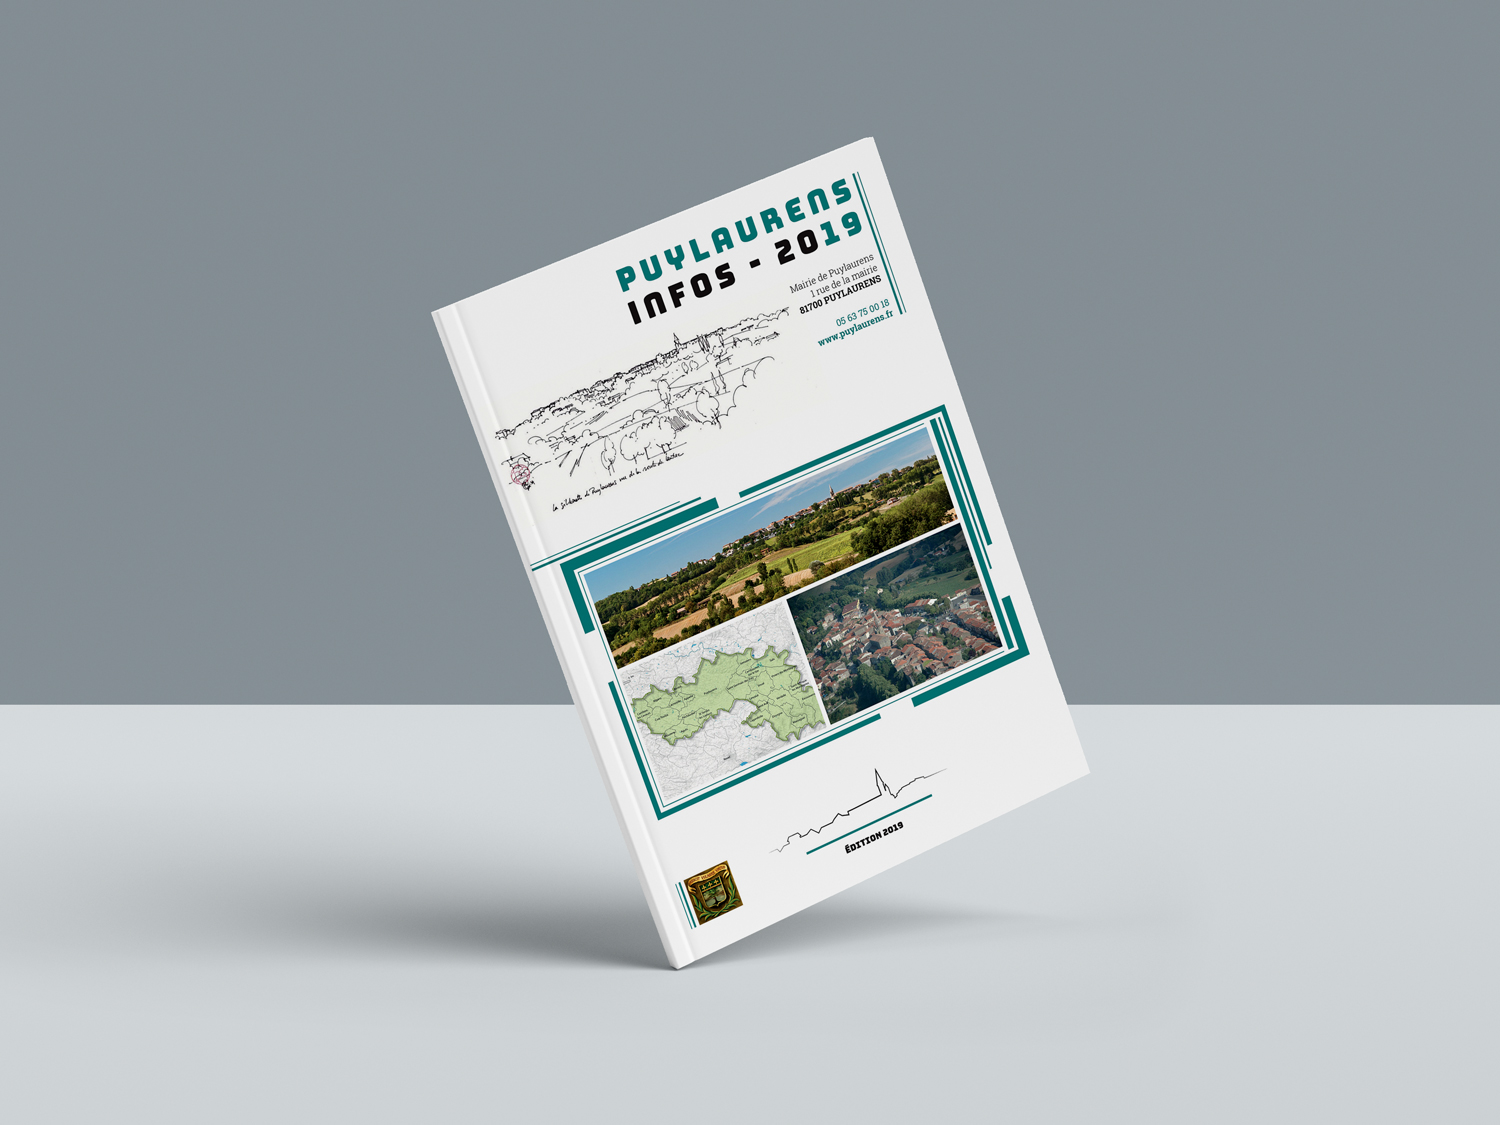 Journal d'information municipale - Puylaurens infos 2019 -